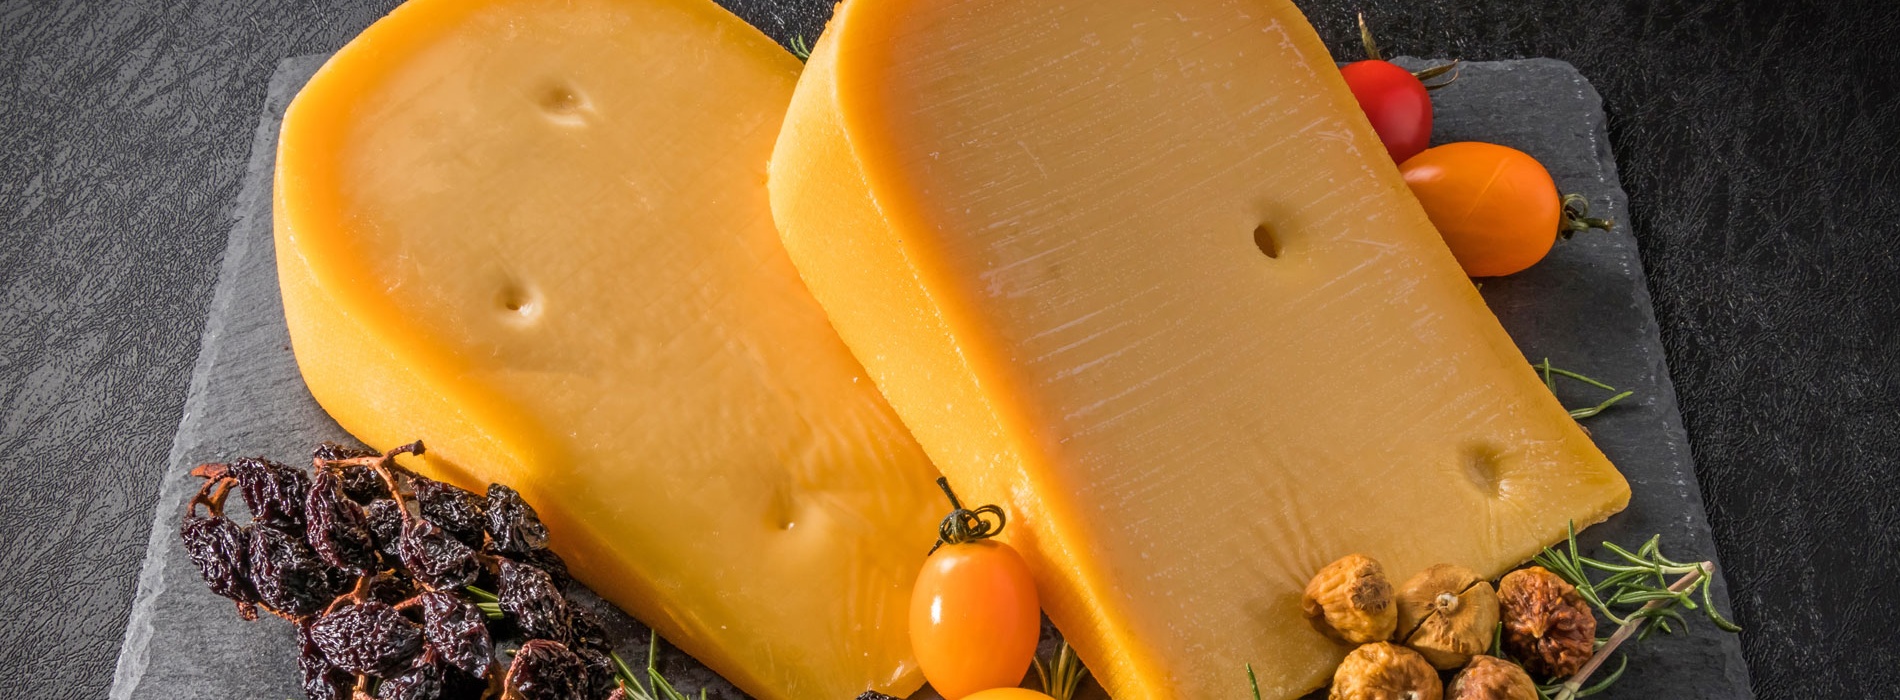 european cheese